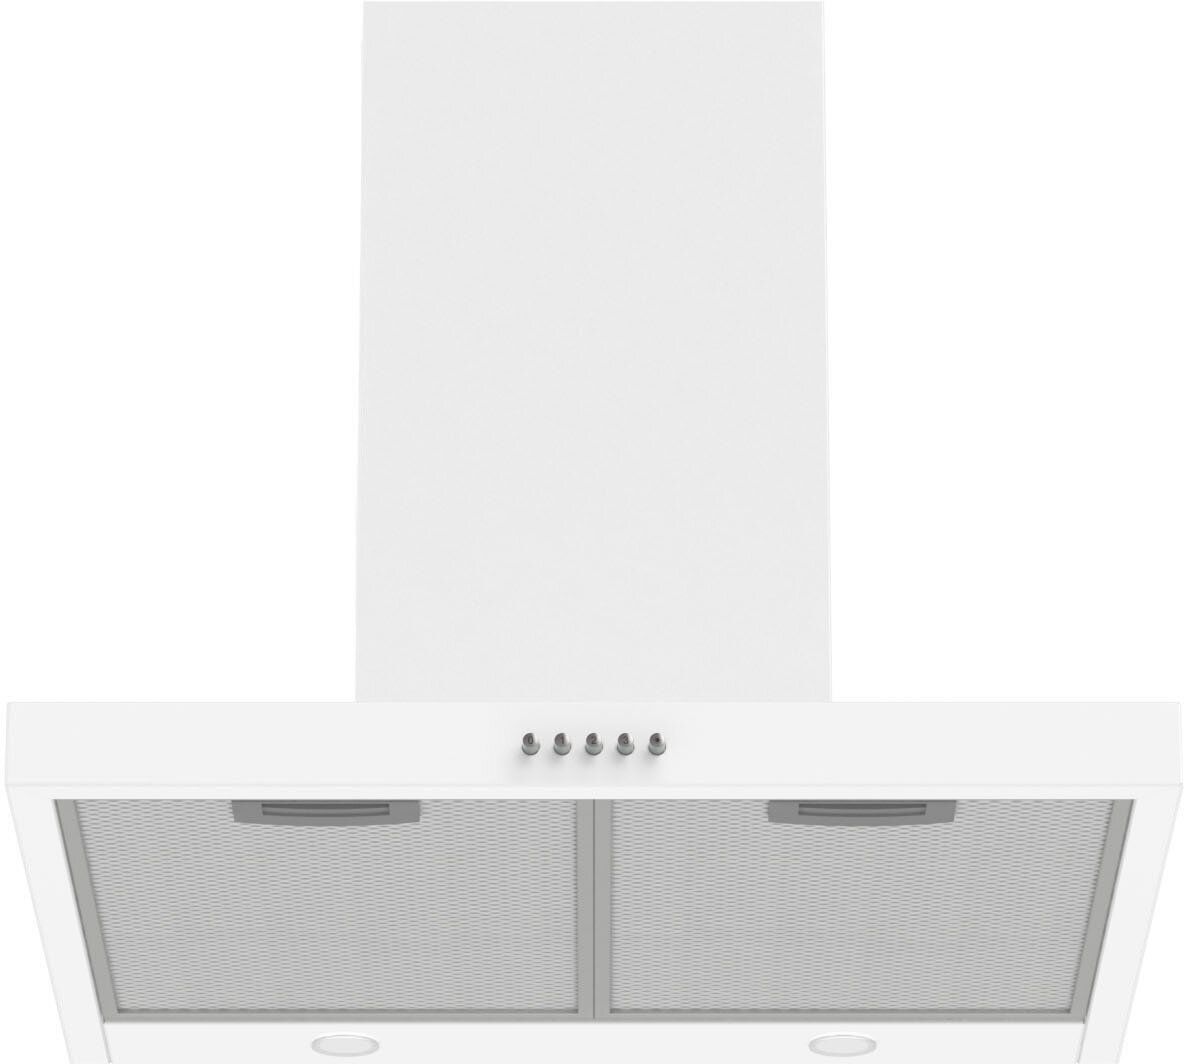 Вытяжка кухонная 60 см купольная KUCHE KAB 610 WL белая для кухни